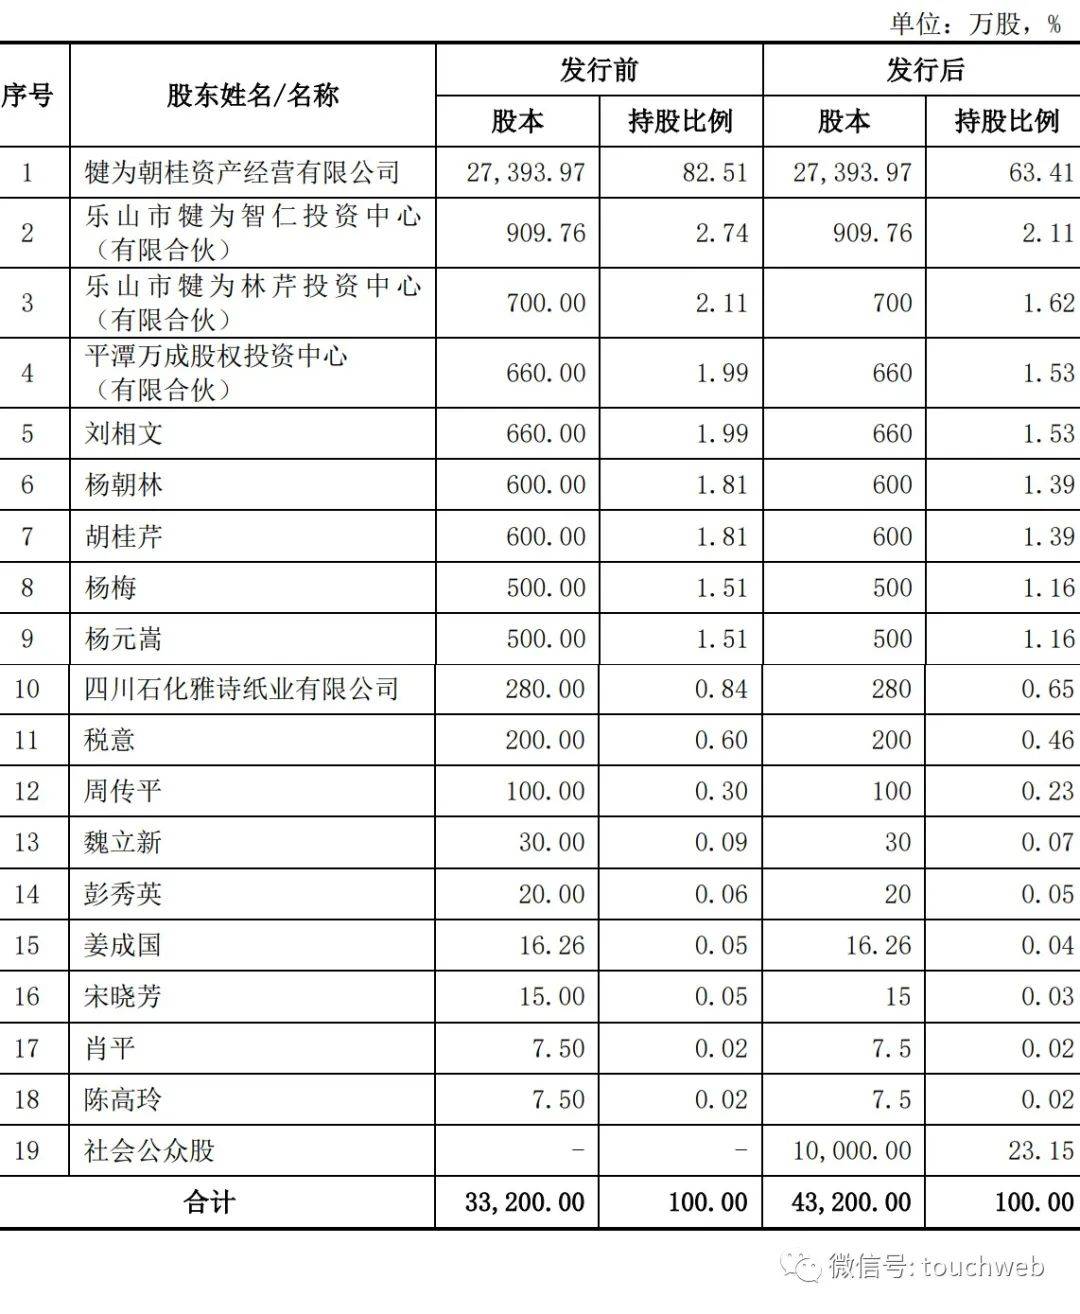 凤生股份冲刺上交所：拟募资5.6亿 杨朝林家族控制91%股权